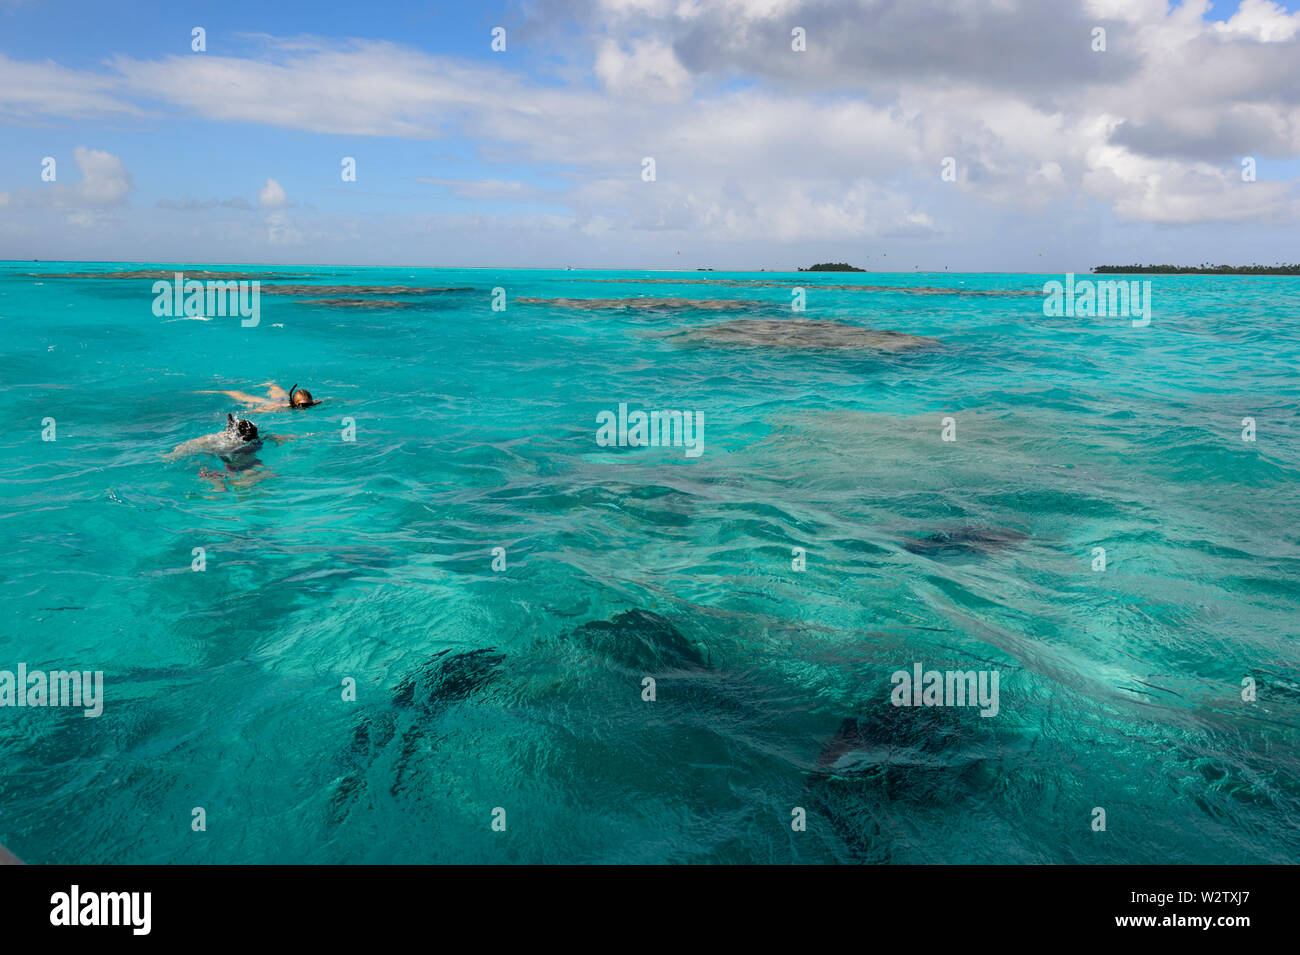 Les personnes de la plongée avec tuba et à la recherche au géant de poissons dans le lagon turquoise de Aitutaki, Îles Cook, Polynésie Française Banque D'Images